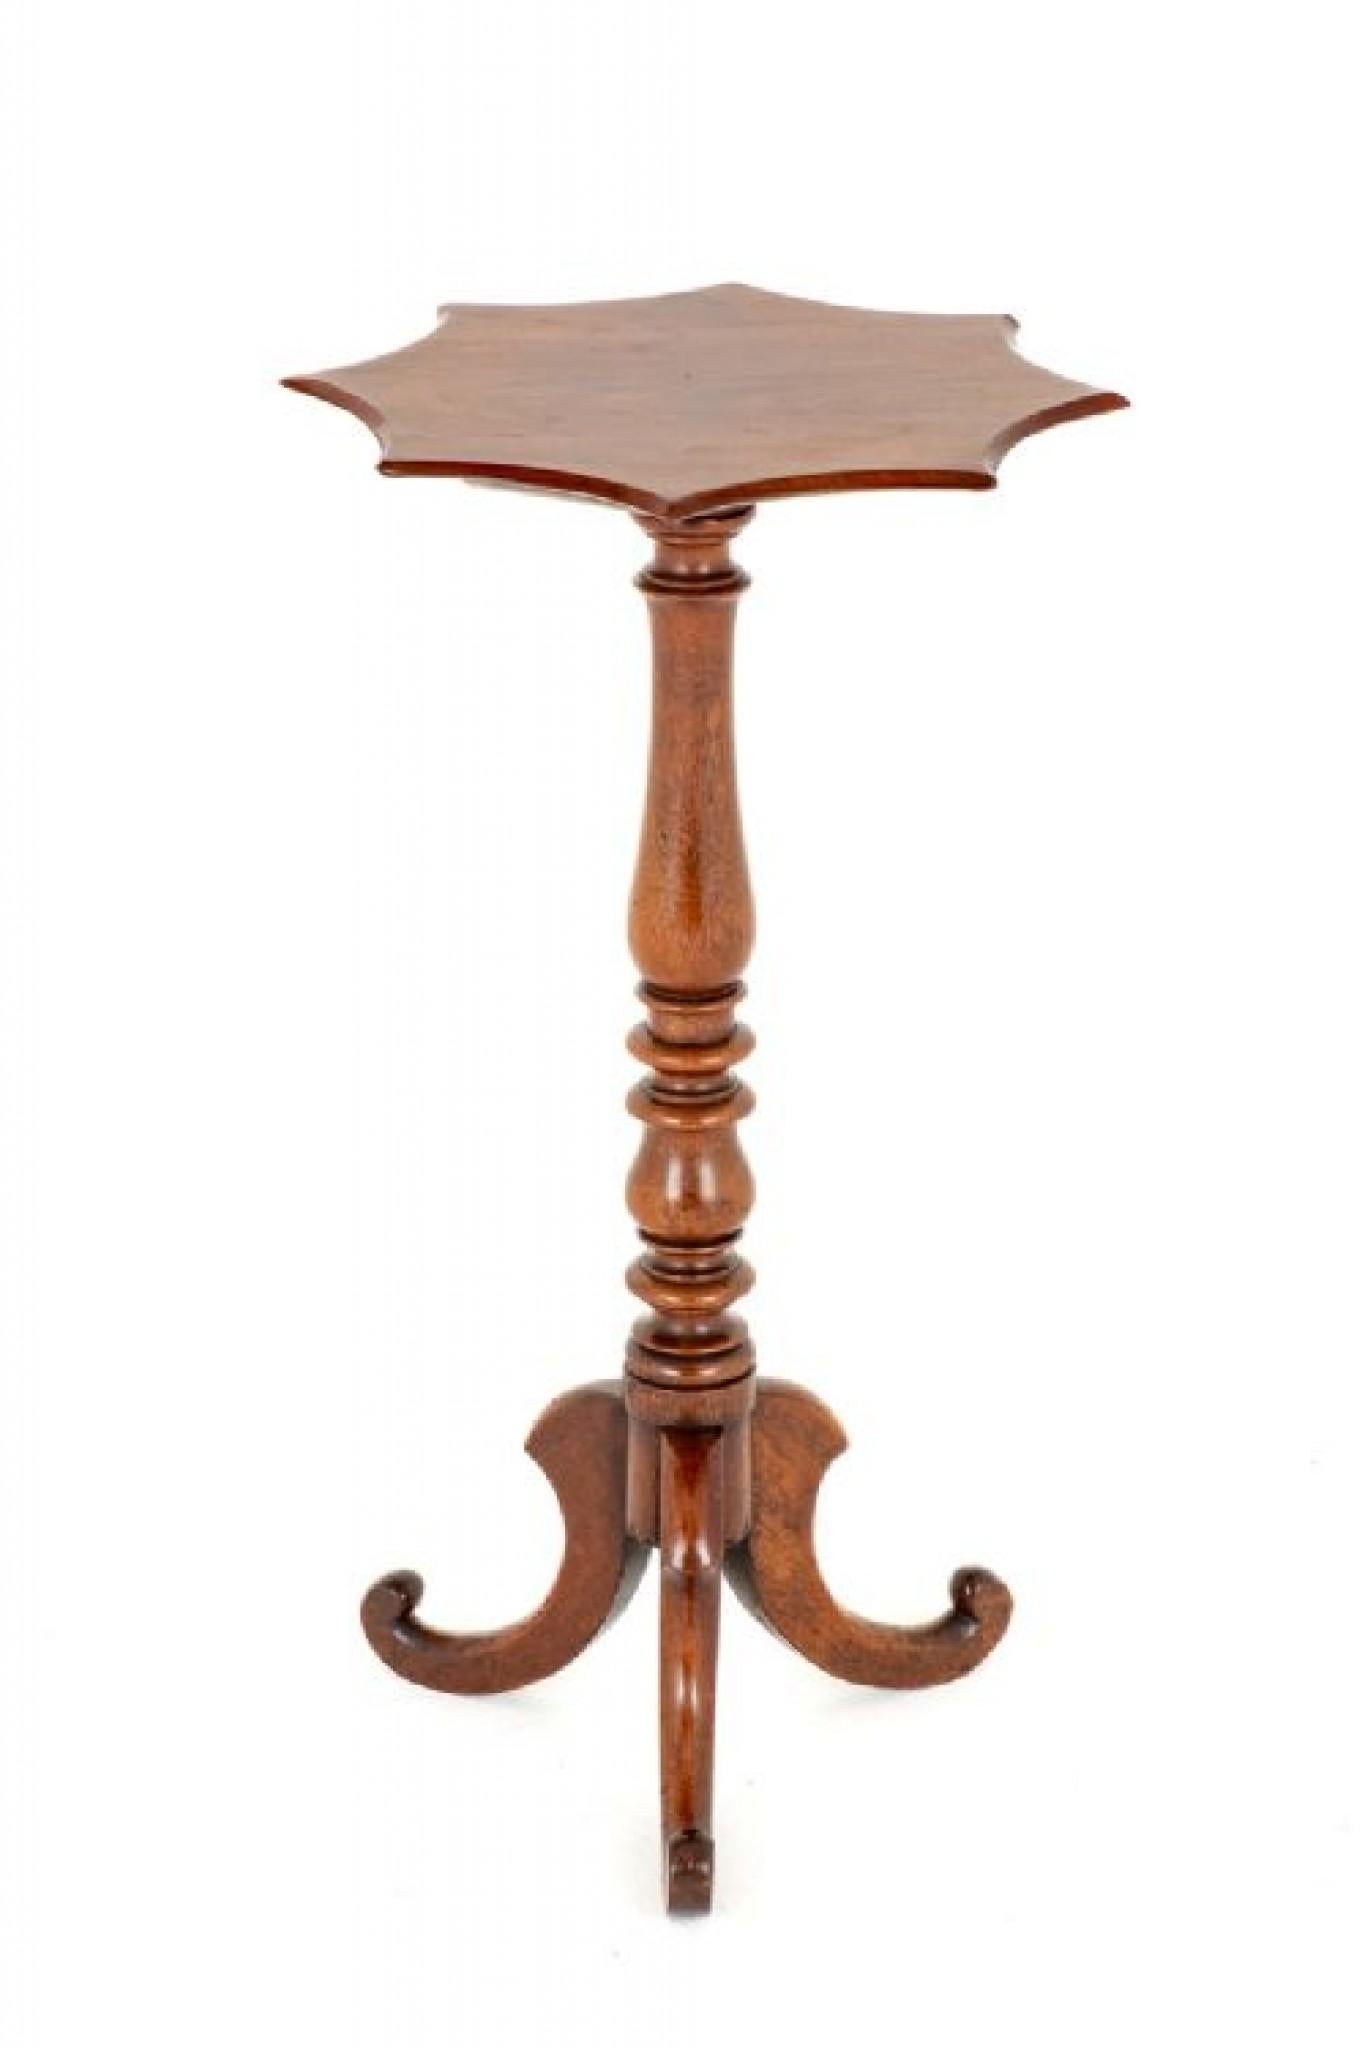 Table à vin victorienne en acajou.
Cette table présente un plateau plutôt inhabituel en forme d'étoile. La colonne est de forme annulaire et repose sur trois pieds en forme.
Présenté en bon état.
Circa 1860